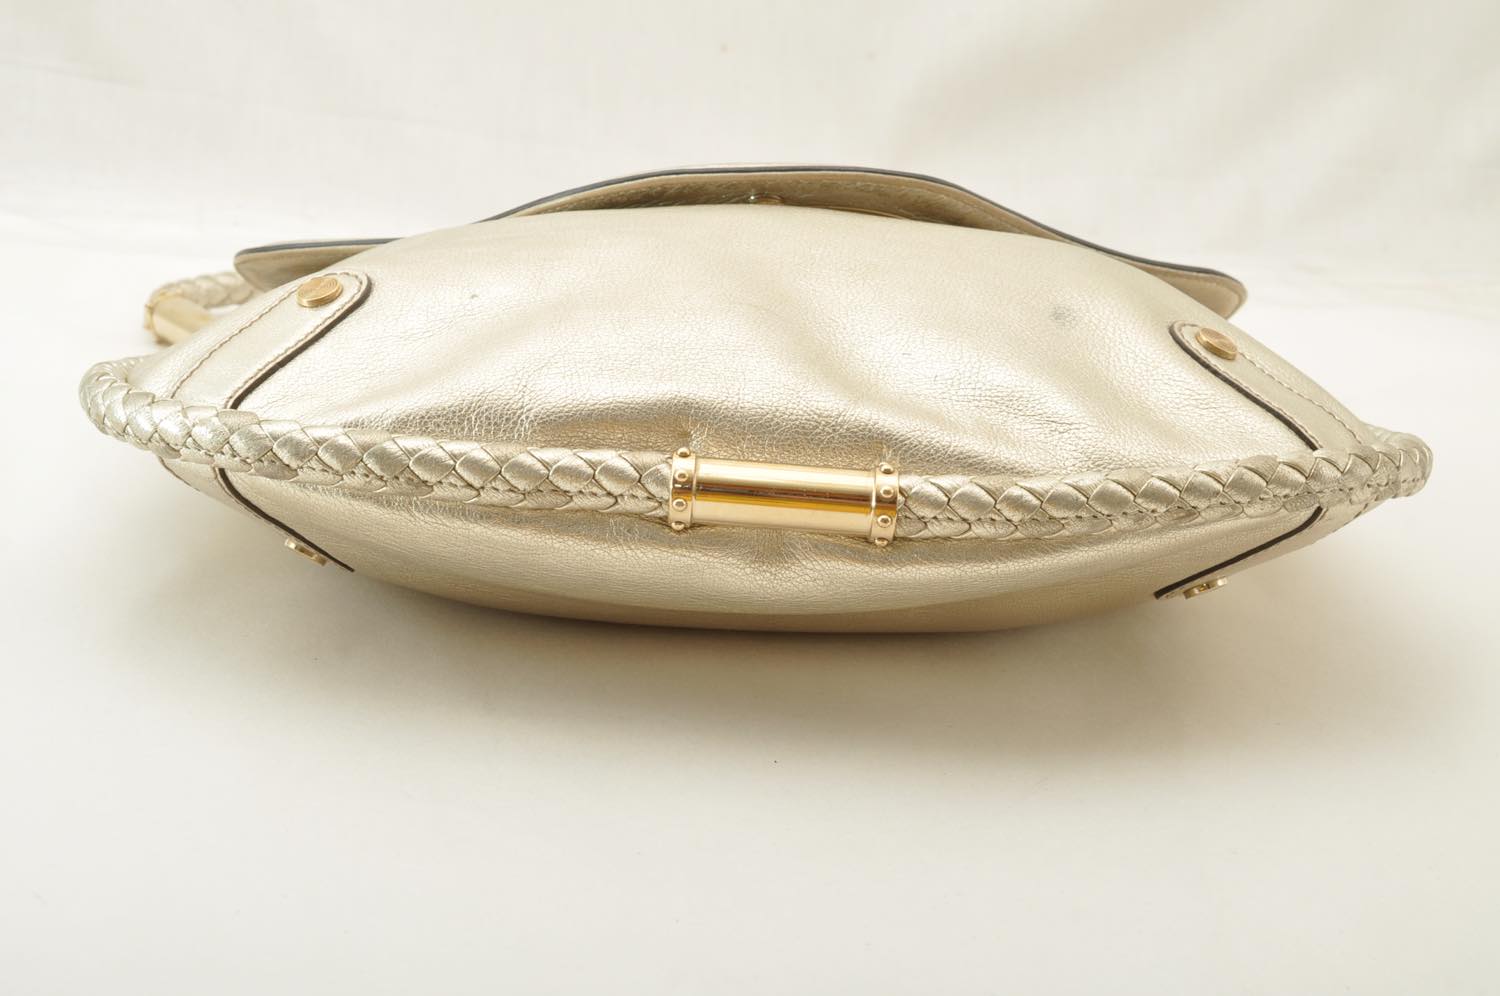 GUCCI Interlocking Fringe Shoulder Bag Leather Champagne Gold 167732 Auth rd106